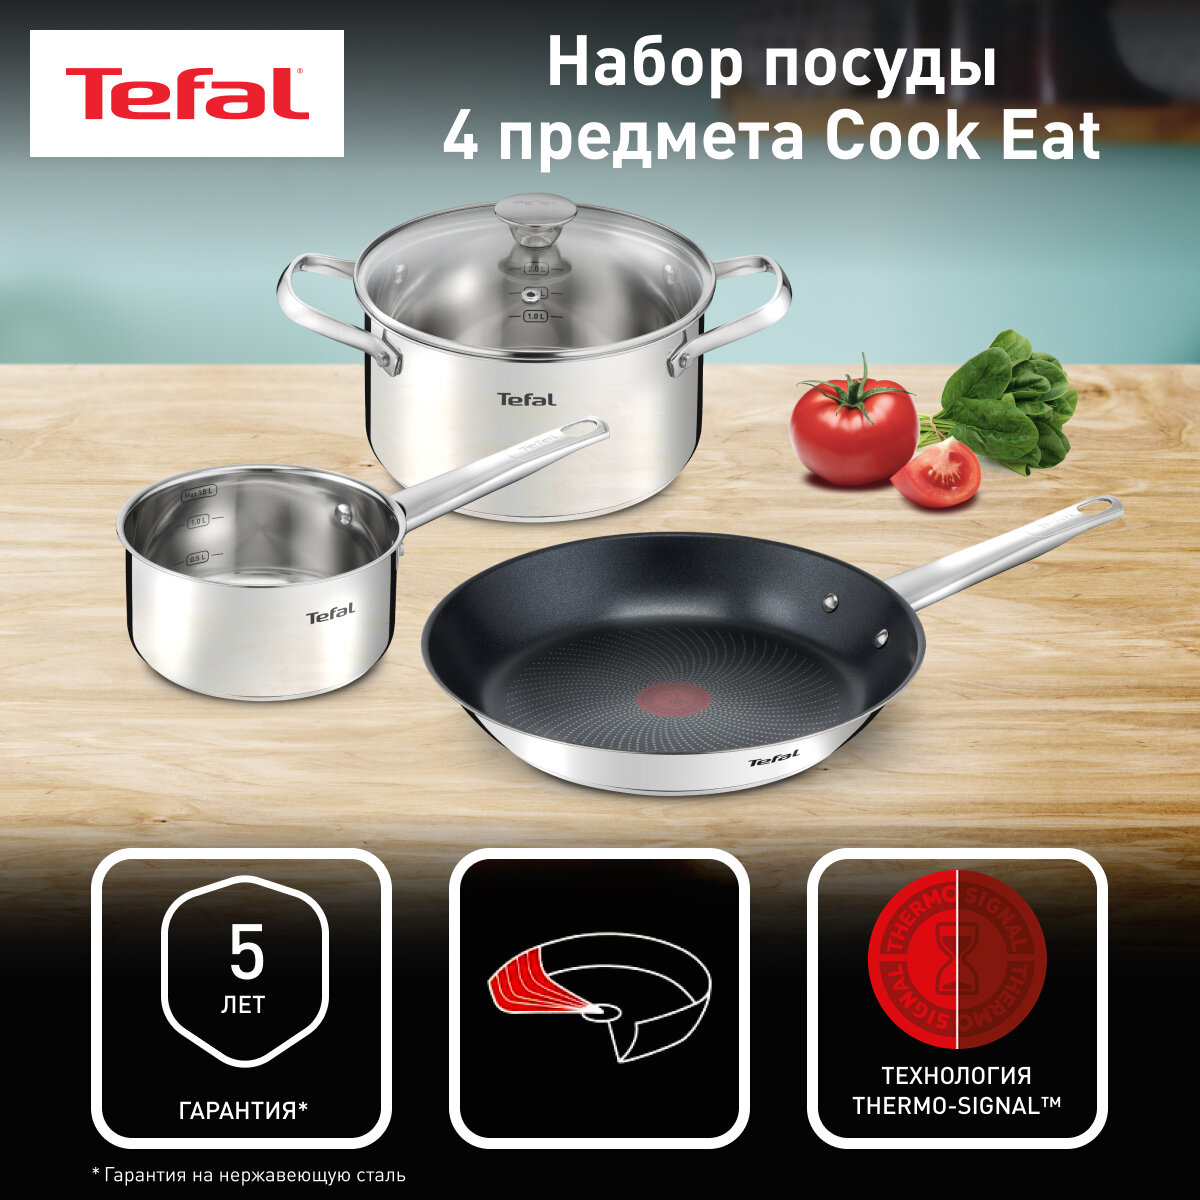 Набор посуды из 4 предметов Tefal Cook Eat: сковорода 28 см, ковш 16 см, кастрюля 20 см, крышка, подходит для индукции